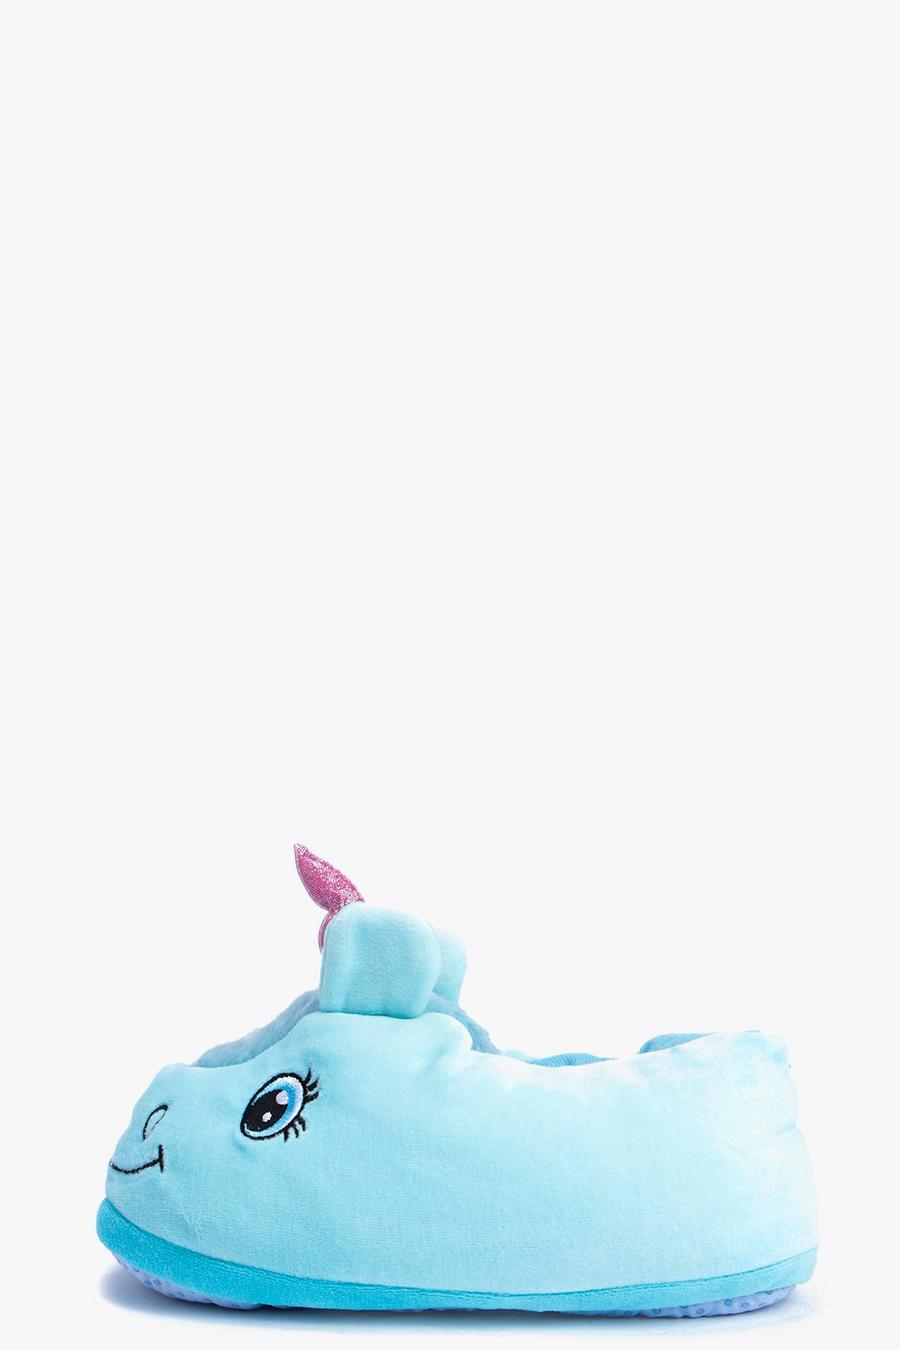 Blue Unicorn Novelty Slippers image number 1